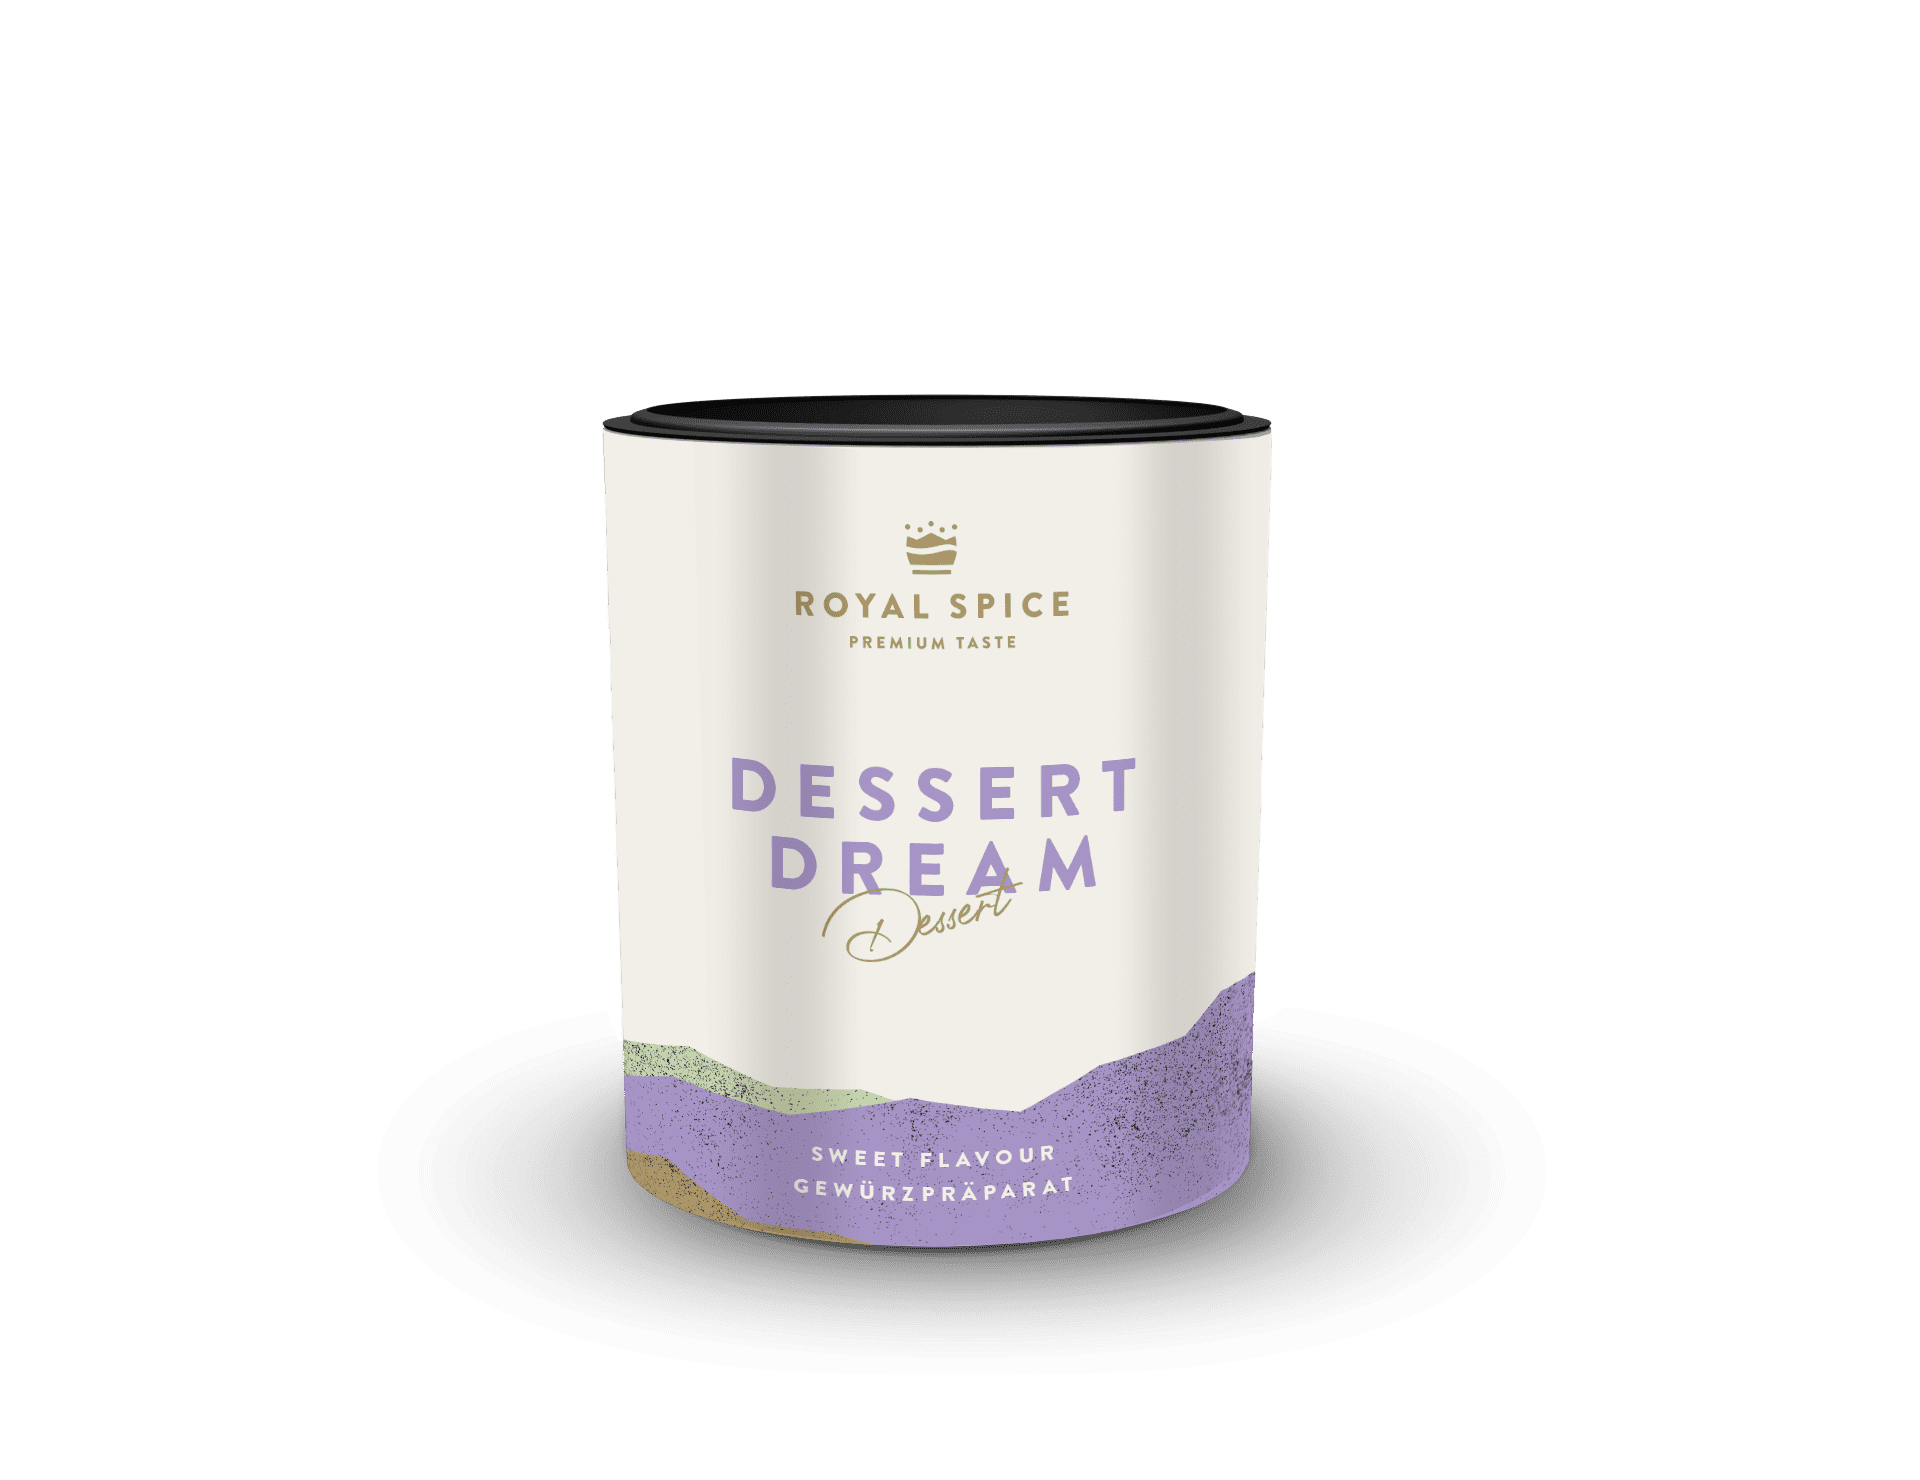 Dessert Dream Gewürz